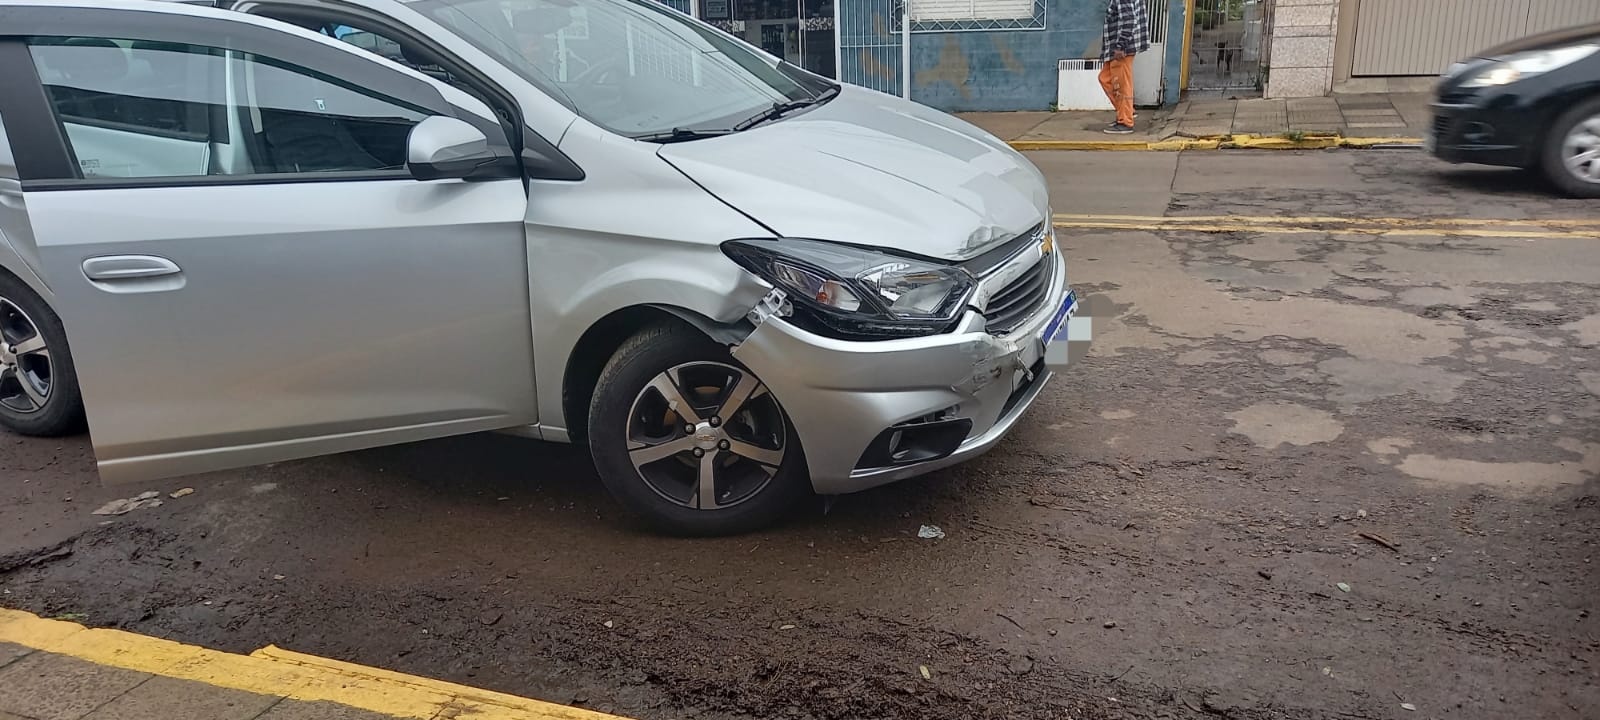 Acidente entre dois veículos deixa uma criança ferida em Alegrete